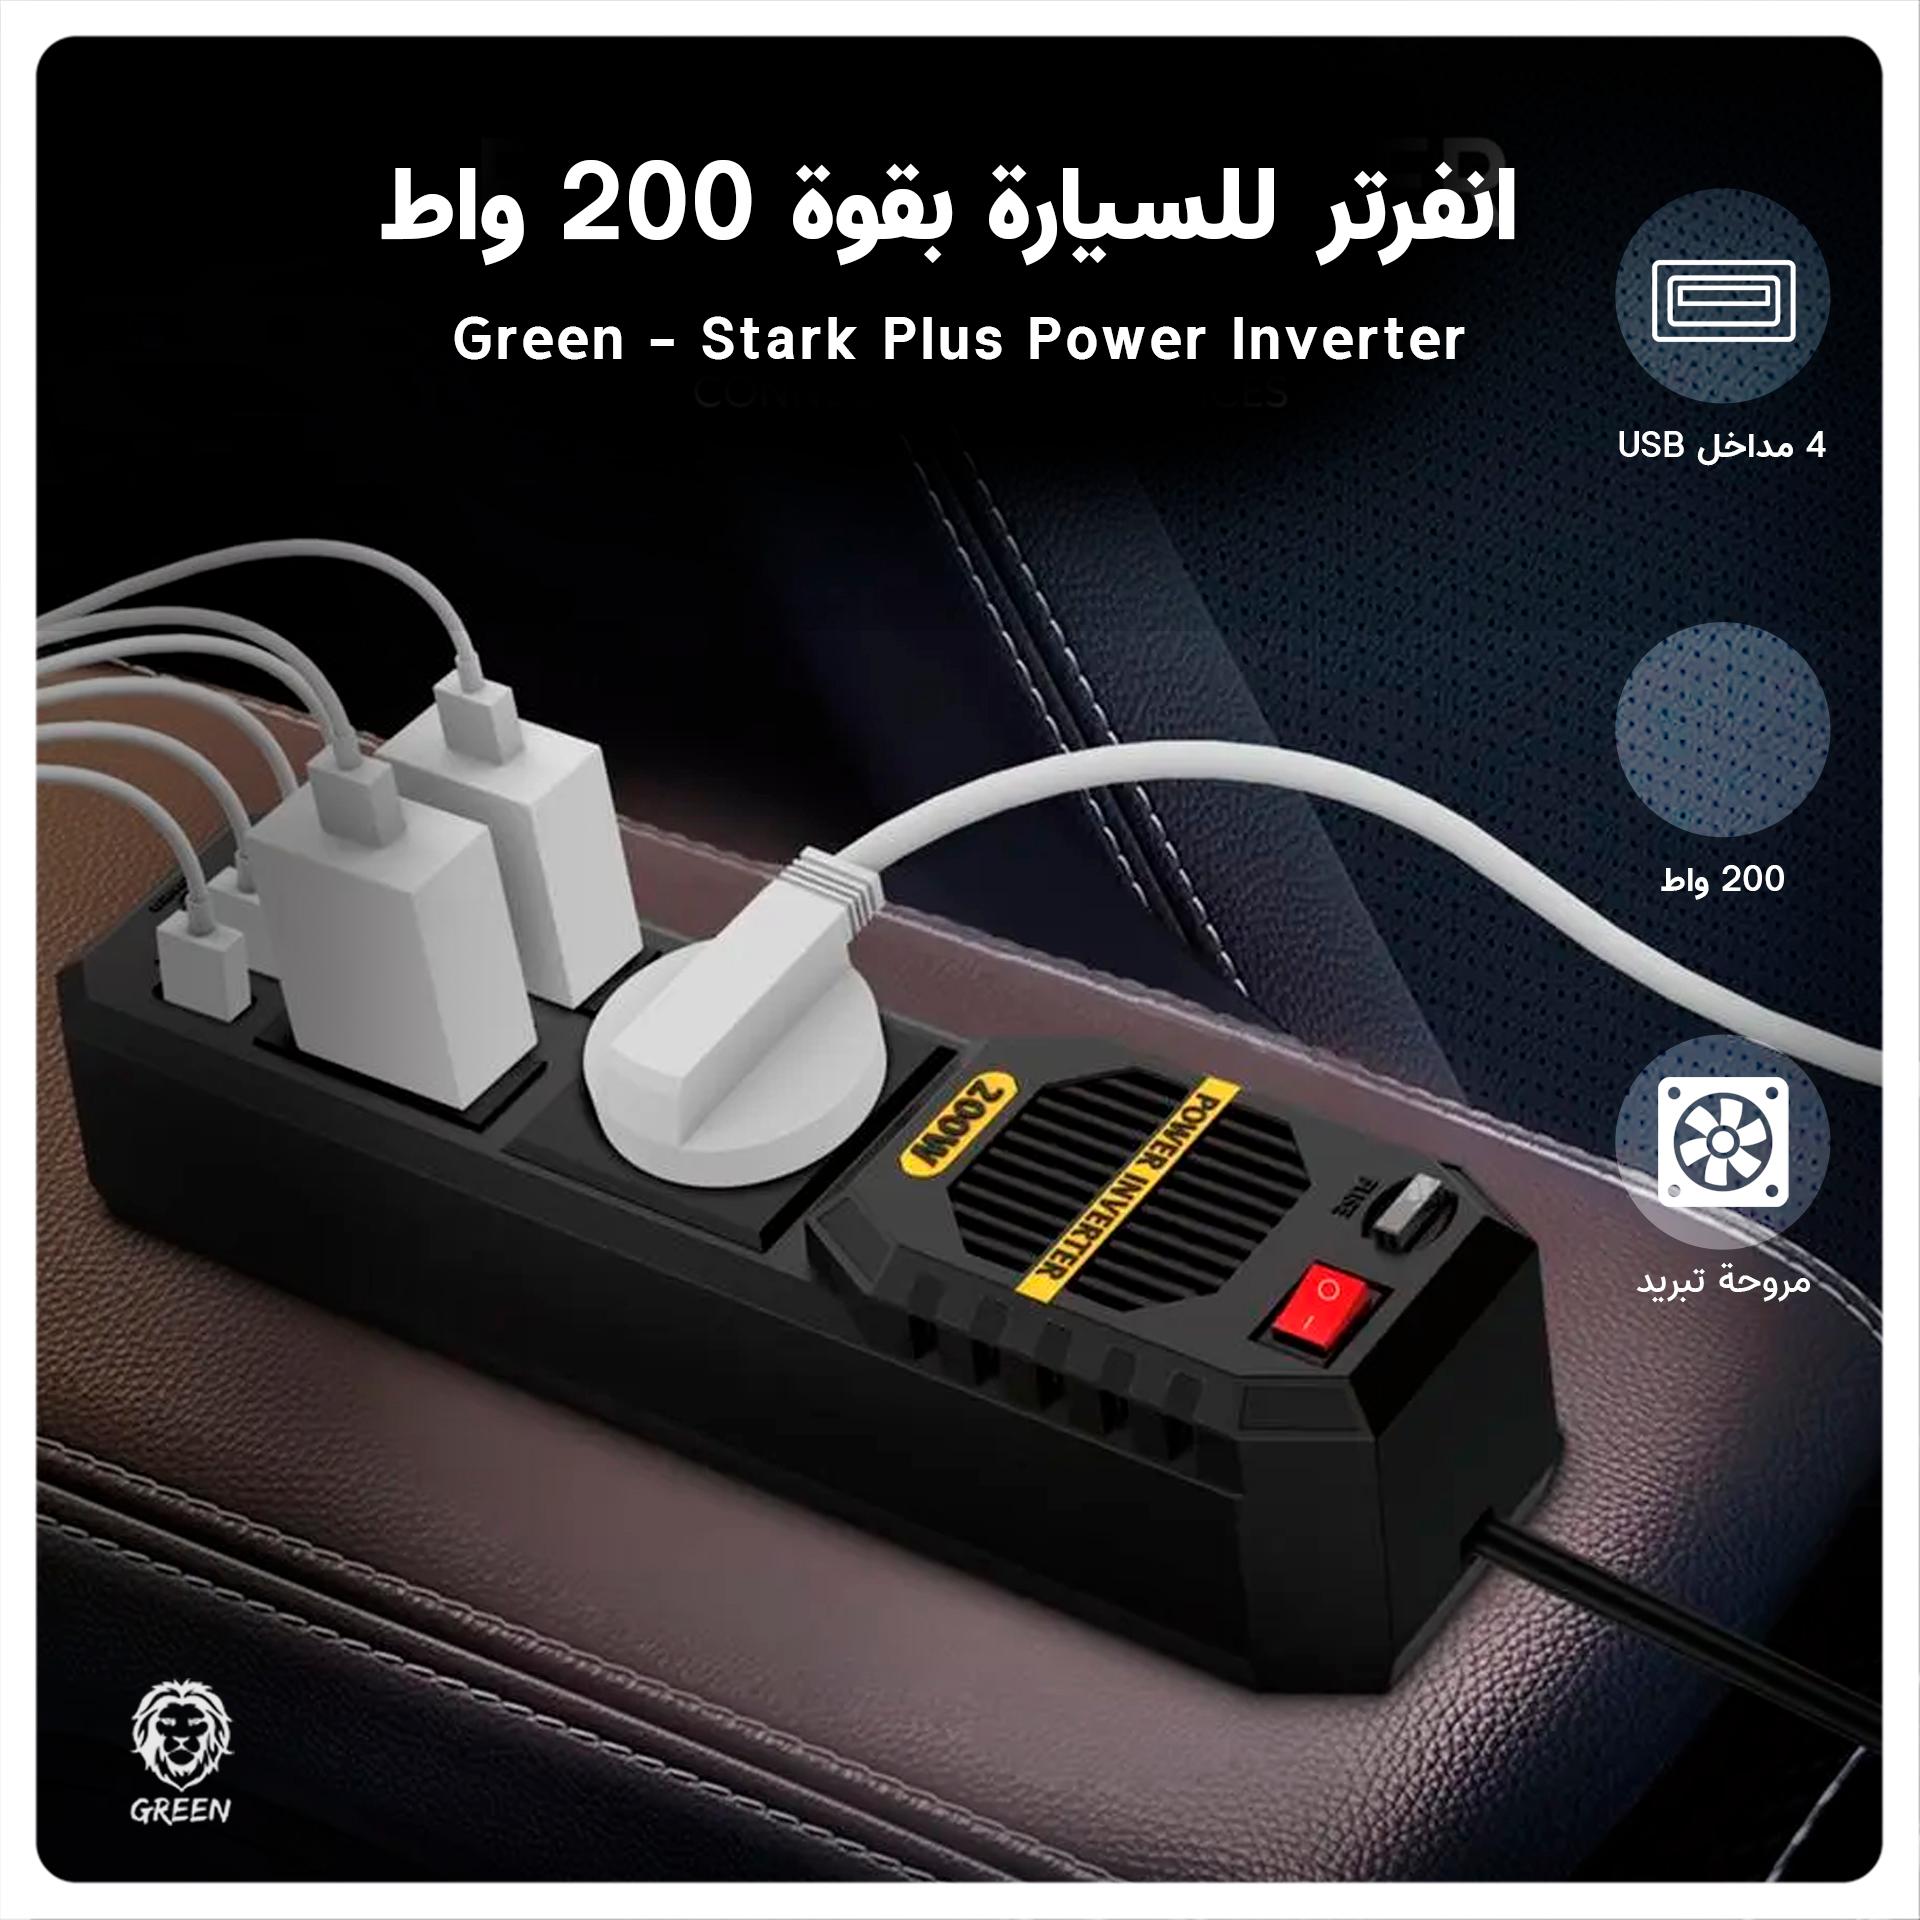 انفرتر للسيارة بقوة 200 واط Green Stark Plus Power Inverter